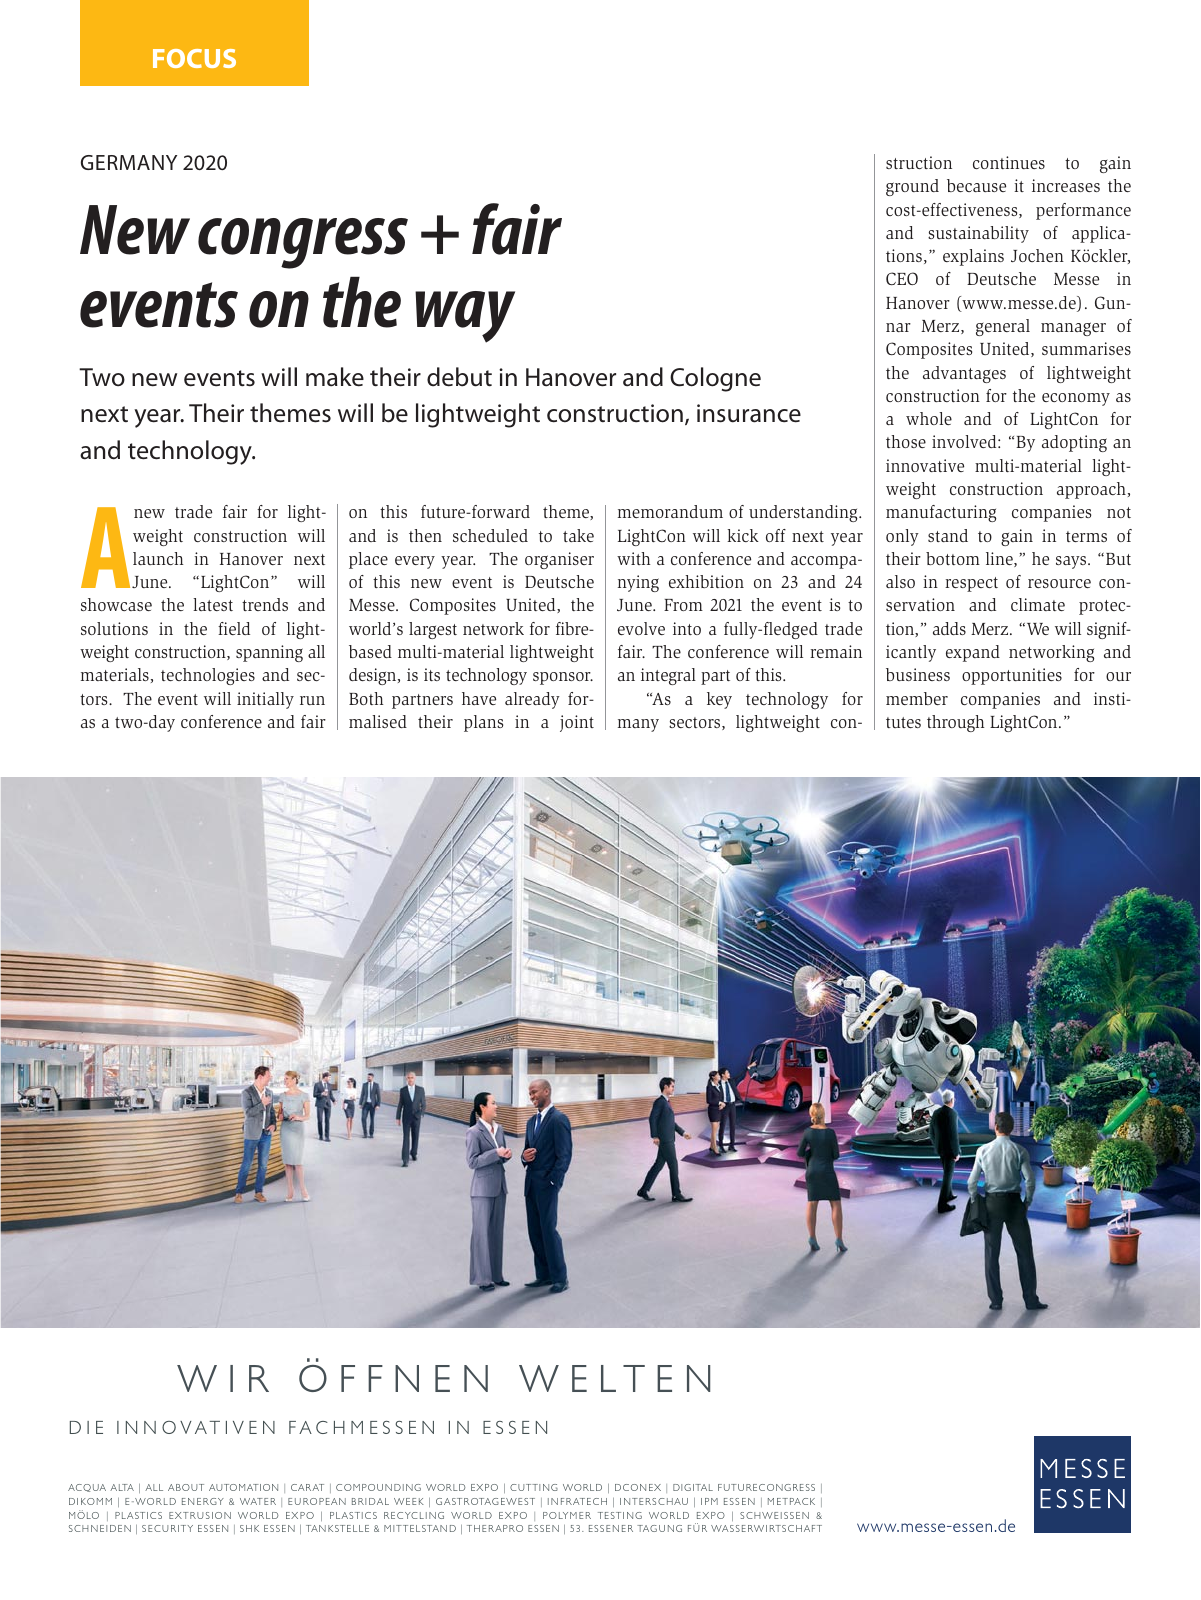 Vorschau TFI Trade-Fairs-International 04/2019 Seite 11